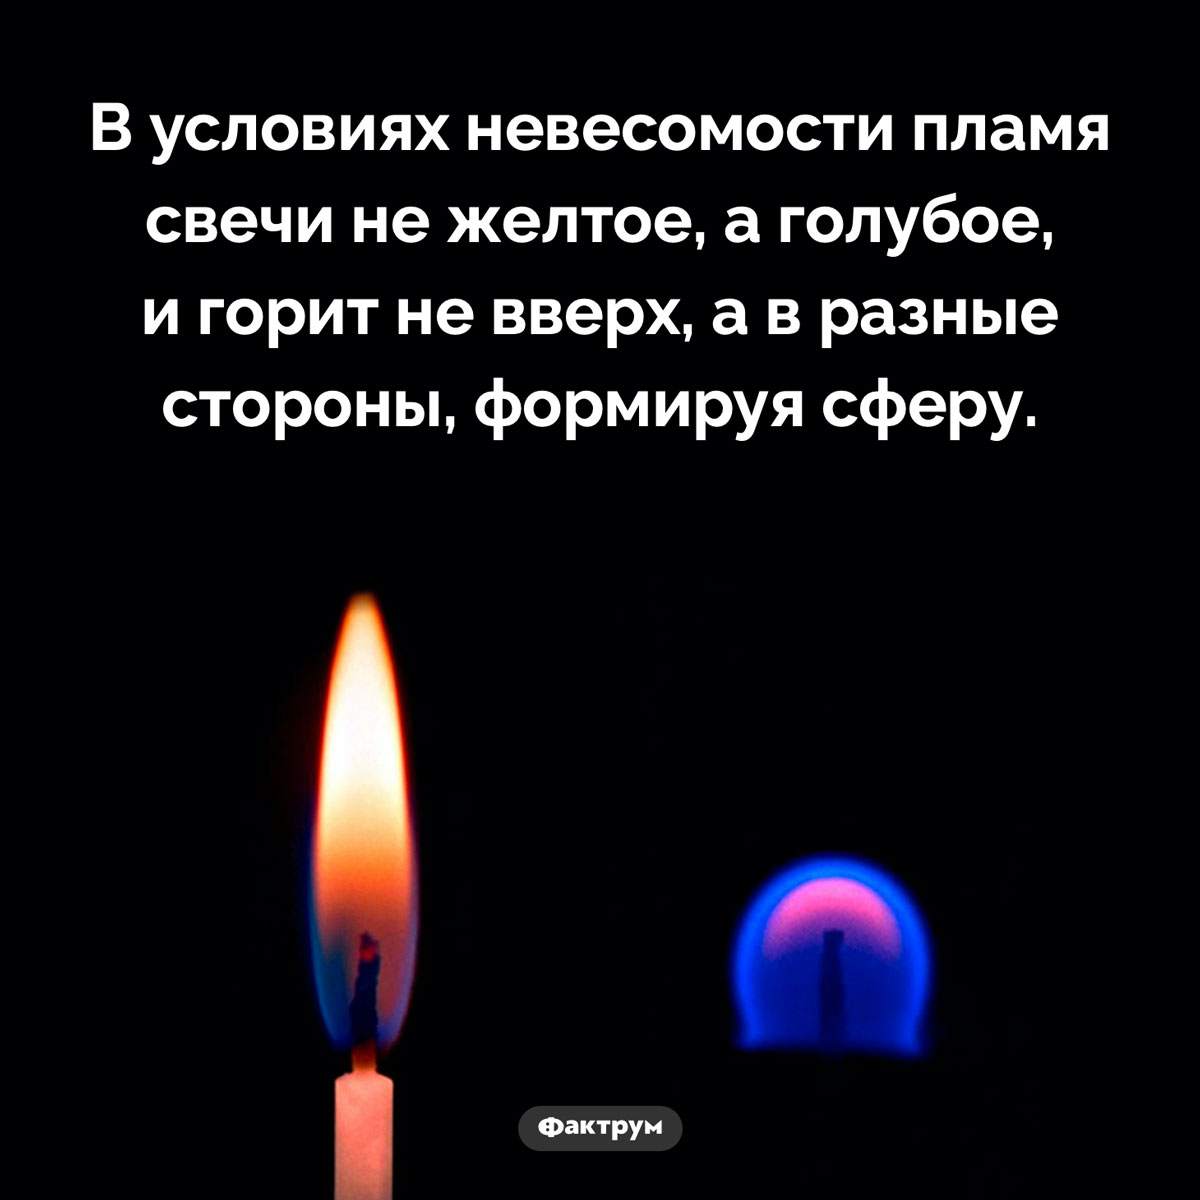 Что происходит с пламенем свечи в невесомости. В условиях невесомости пламя свечи не желтое, а голубое, и горит не вверх, а в разные стороны, формируя сферу.